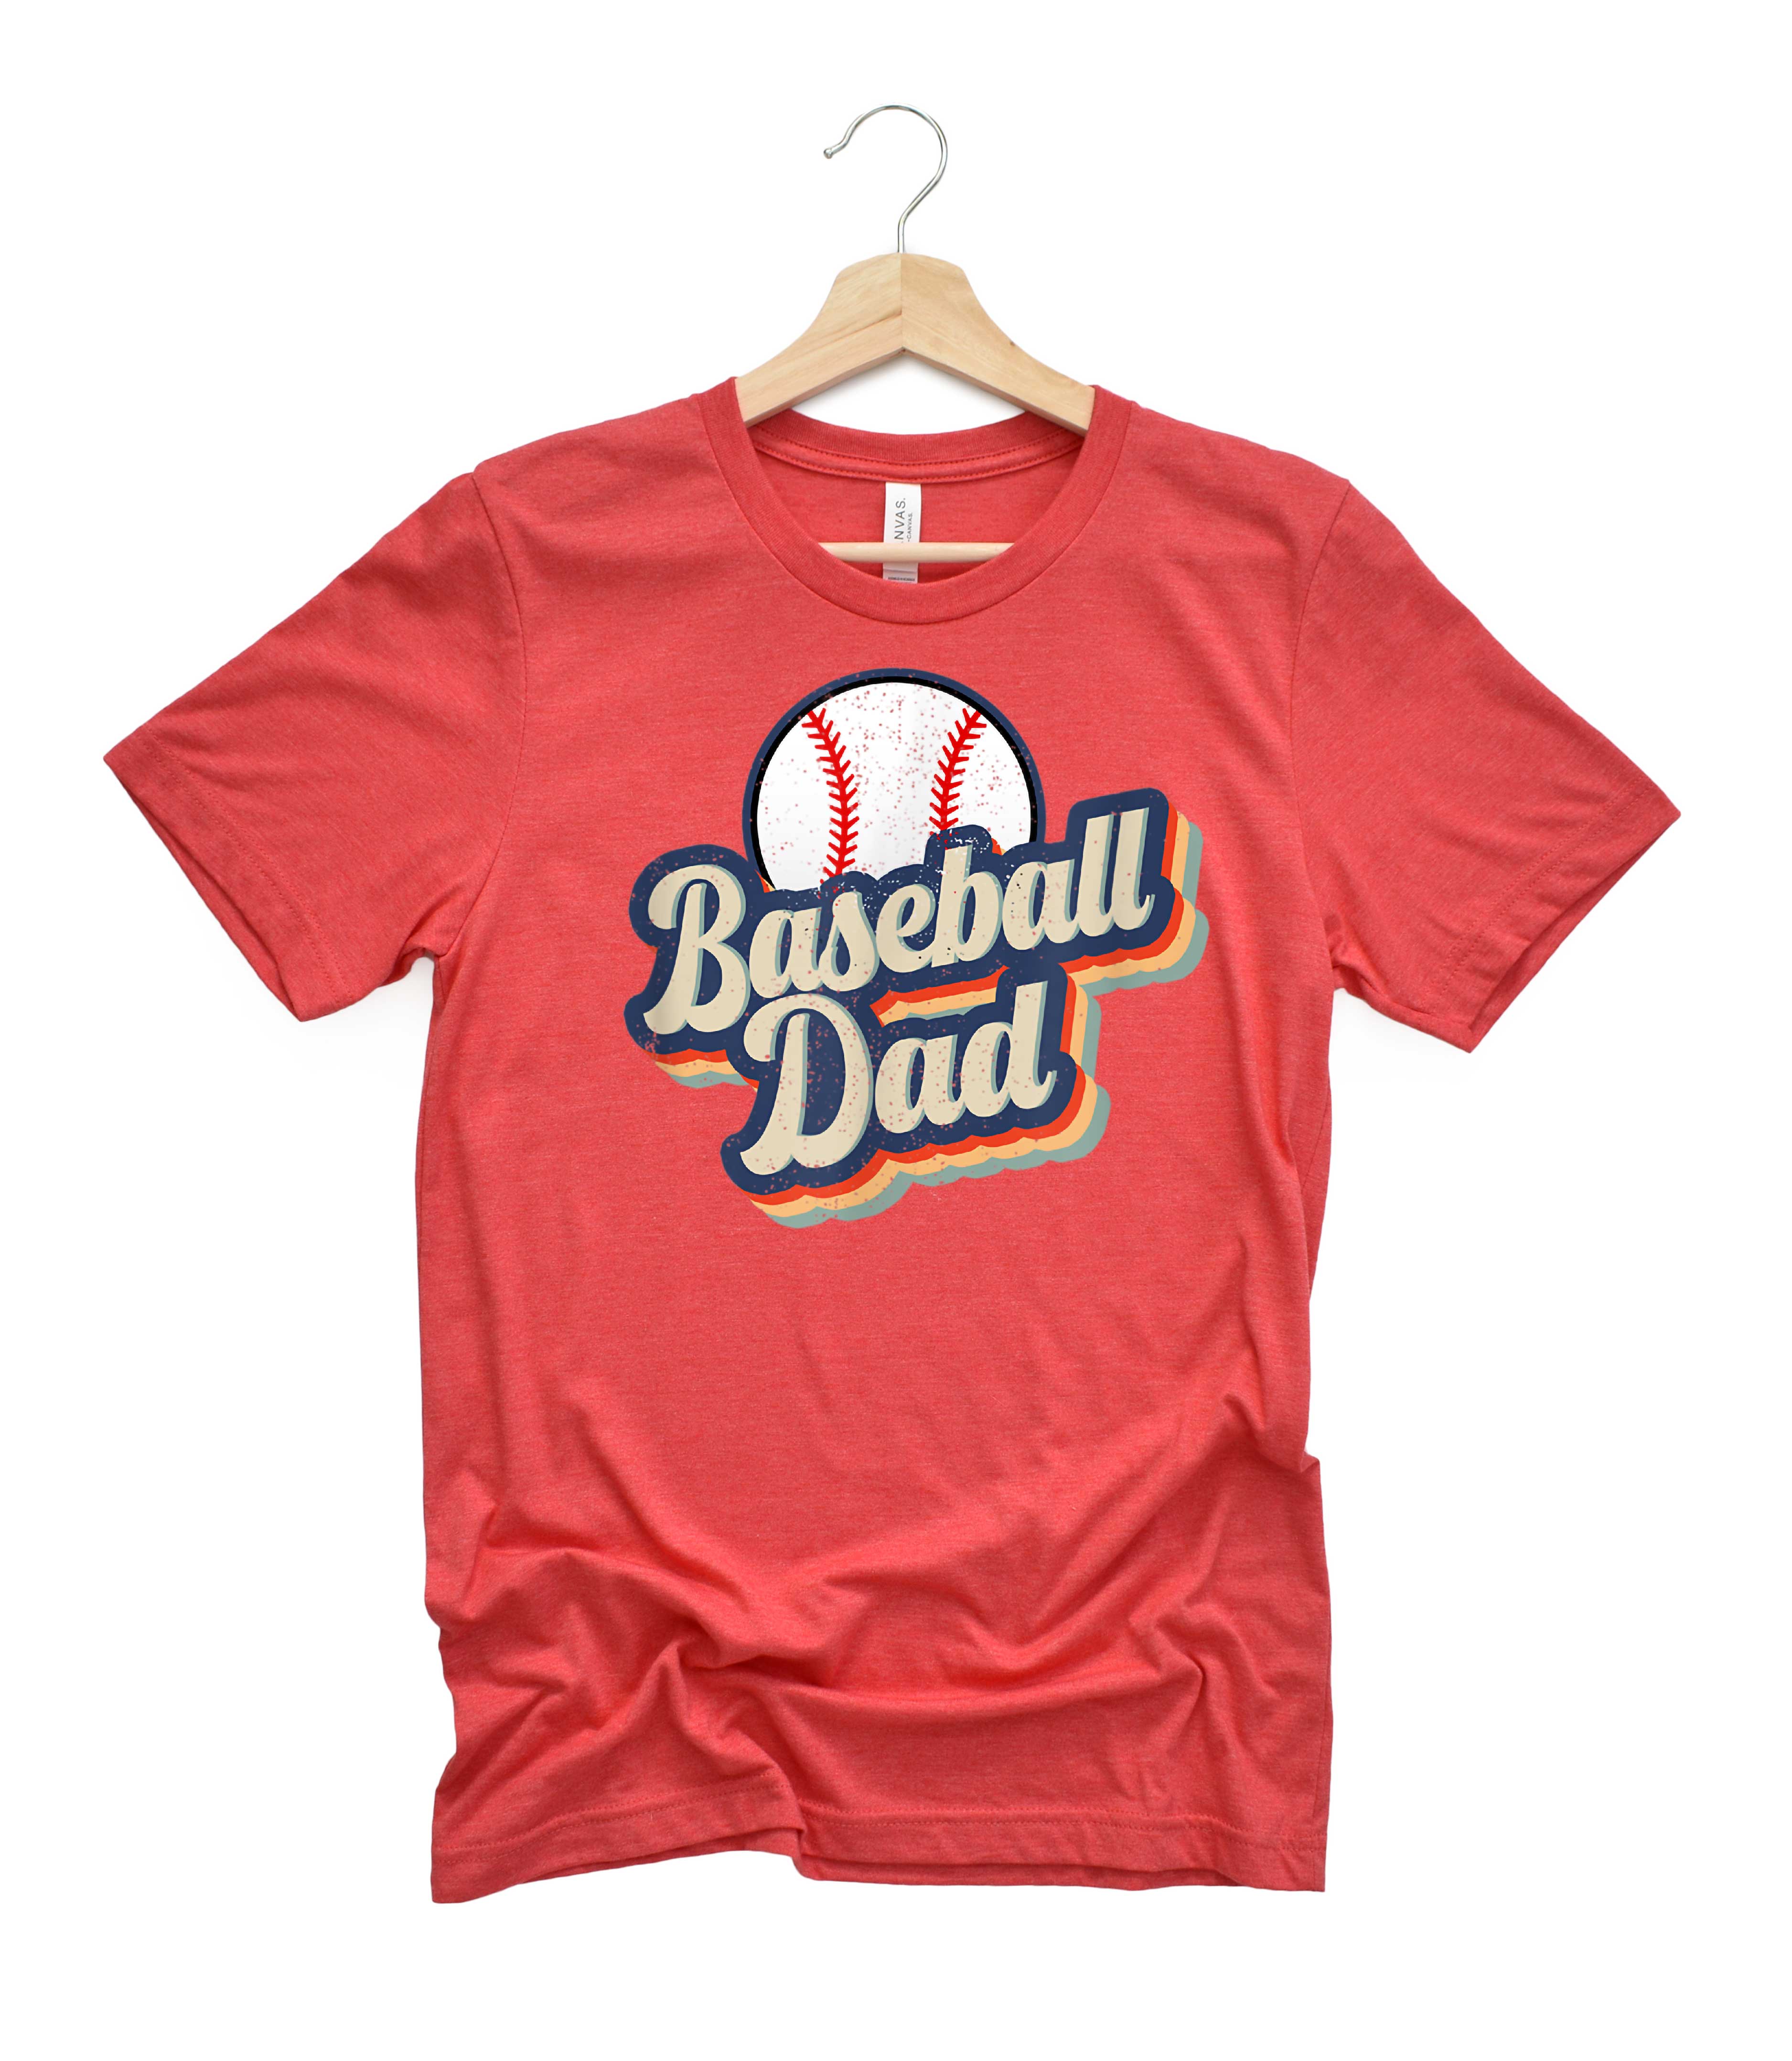 baseball dad shirts